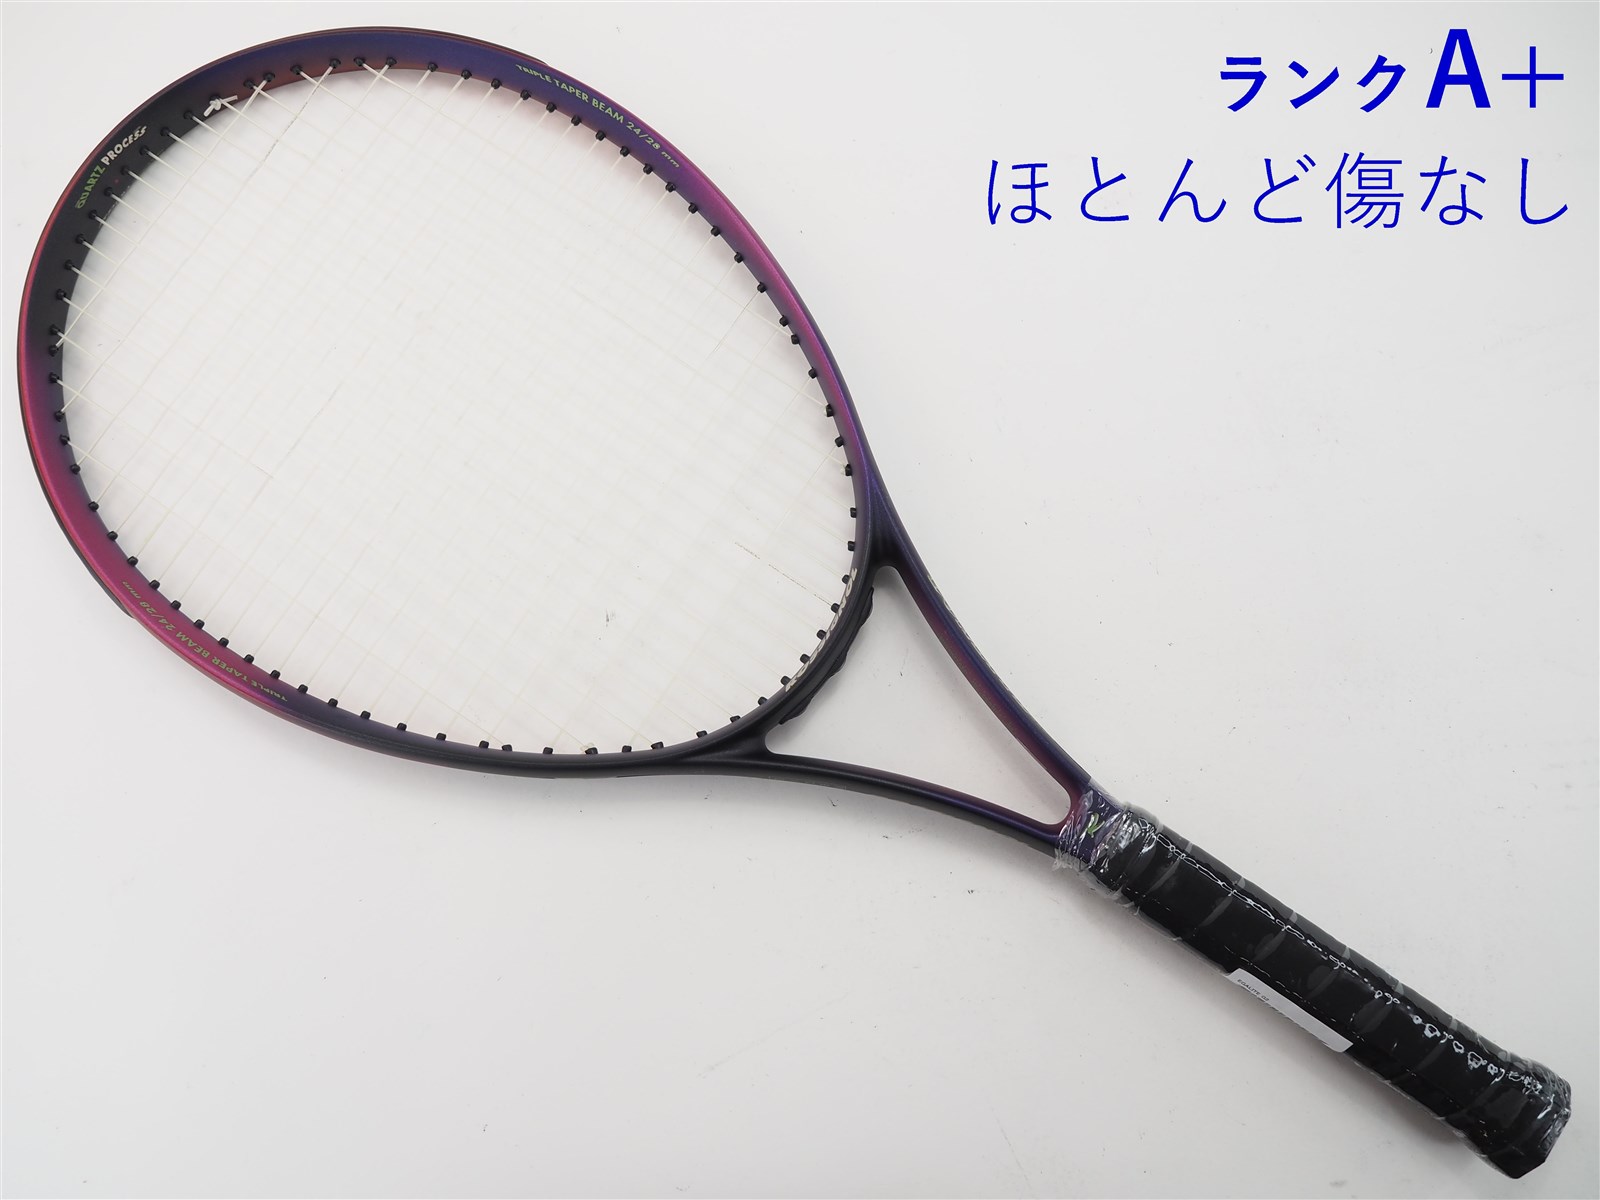 テニスラケット ロシニョール エガライト (G2)ROSSIGNOL EGALITE www